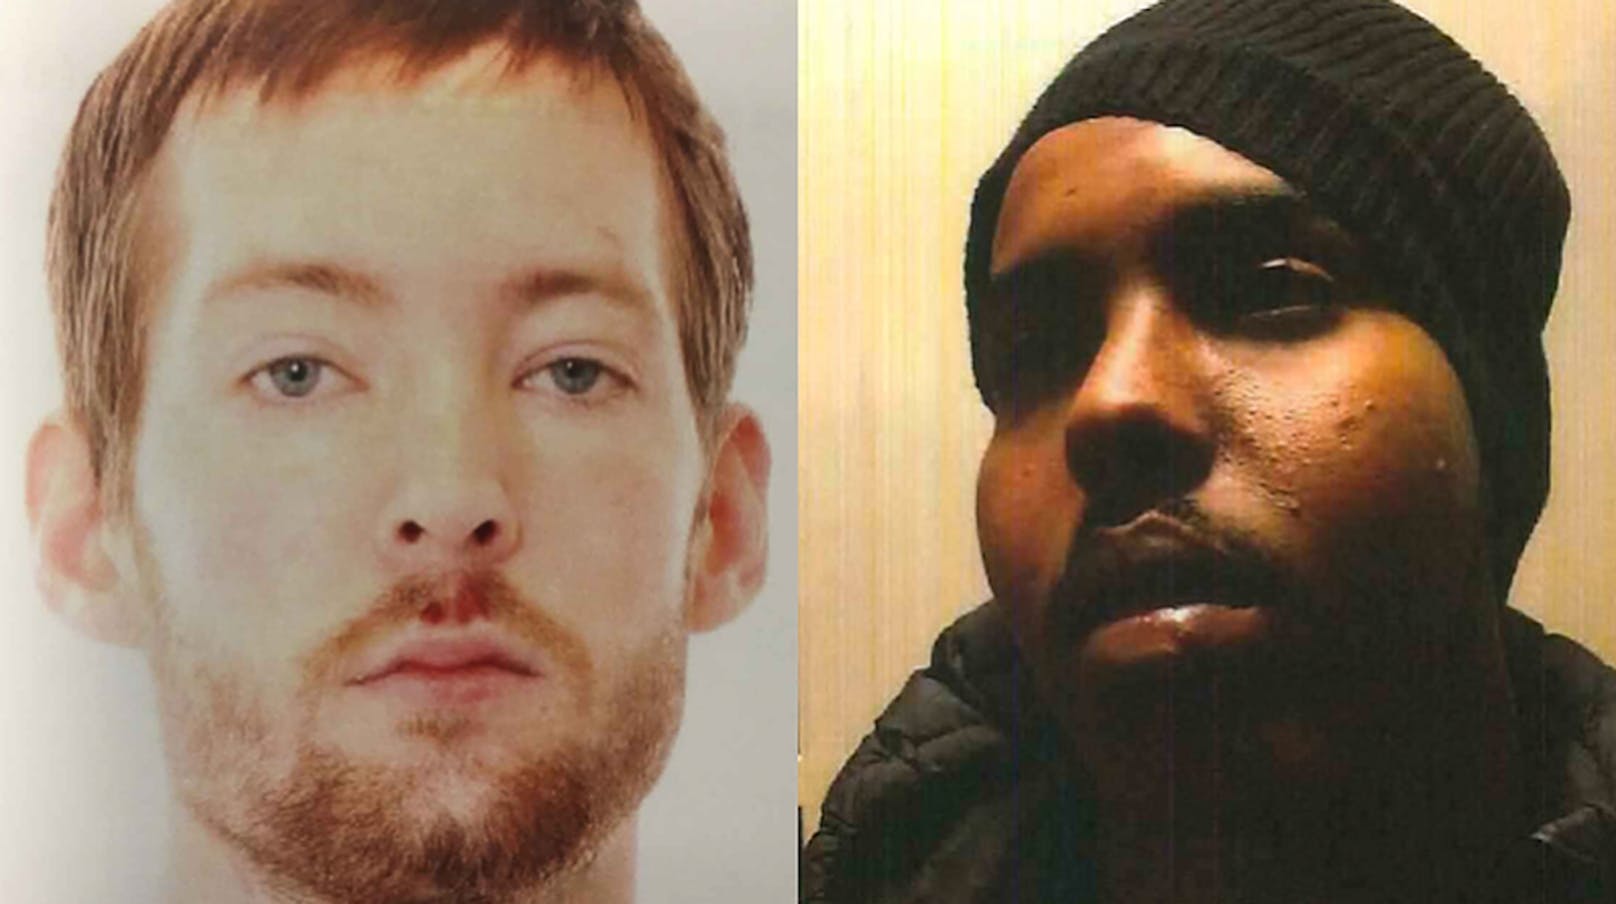 Das sind die beiden Geiselnehmer.&nbsp;Laut schwedischen Medien handelt es sich bei den Insassen um zwei wegen Mordes verurteilte Verbrecher: Isak D. (30) und Haned Mahamed A. (24).